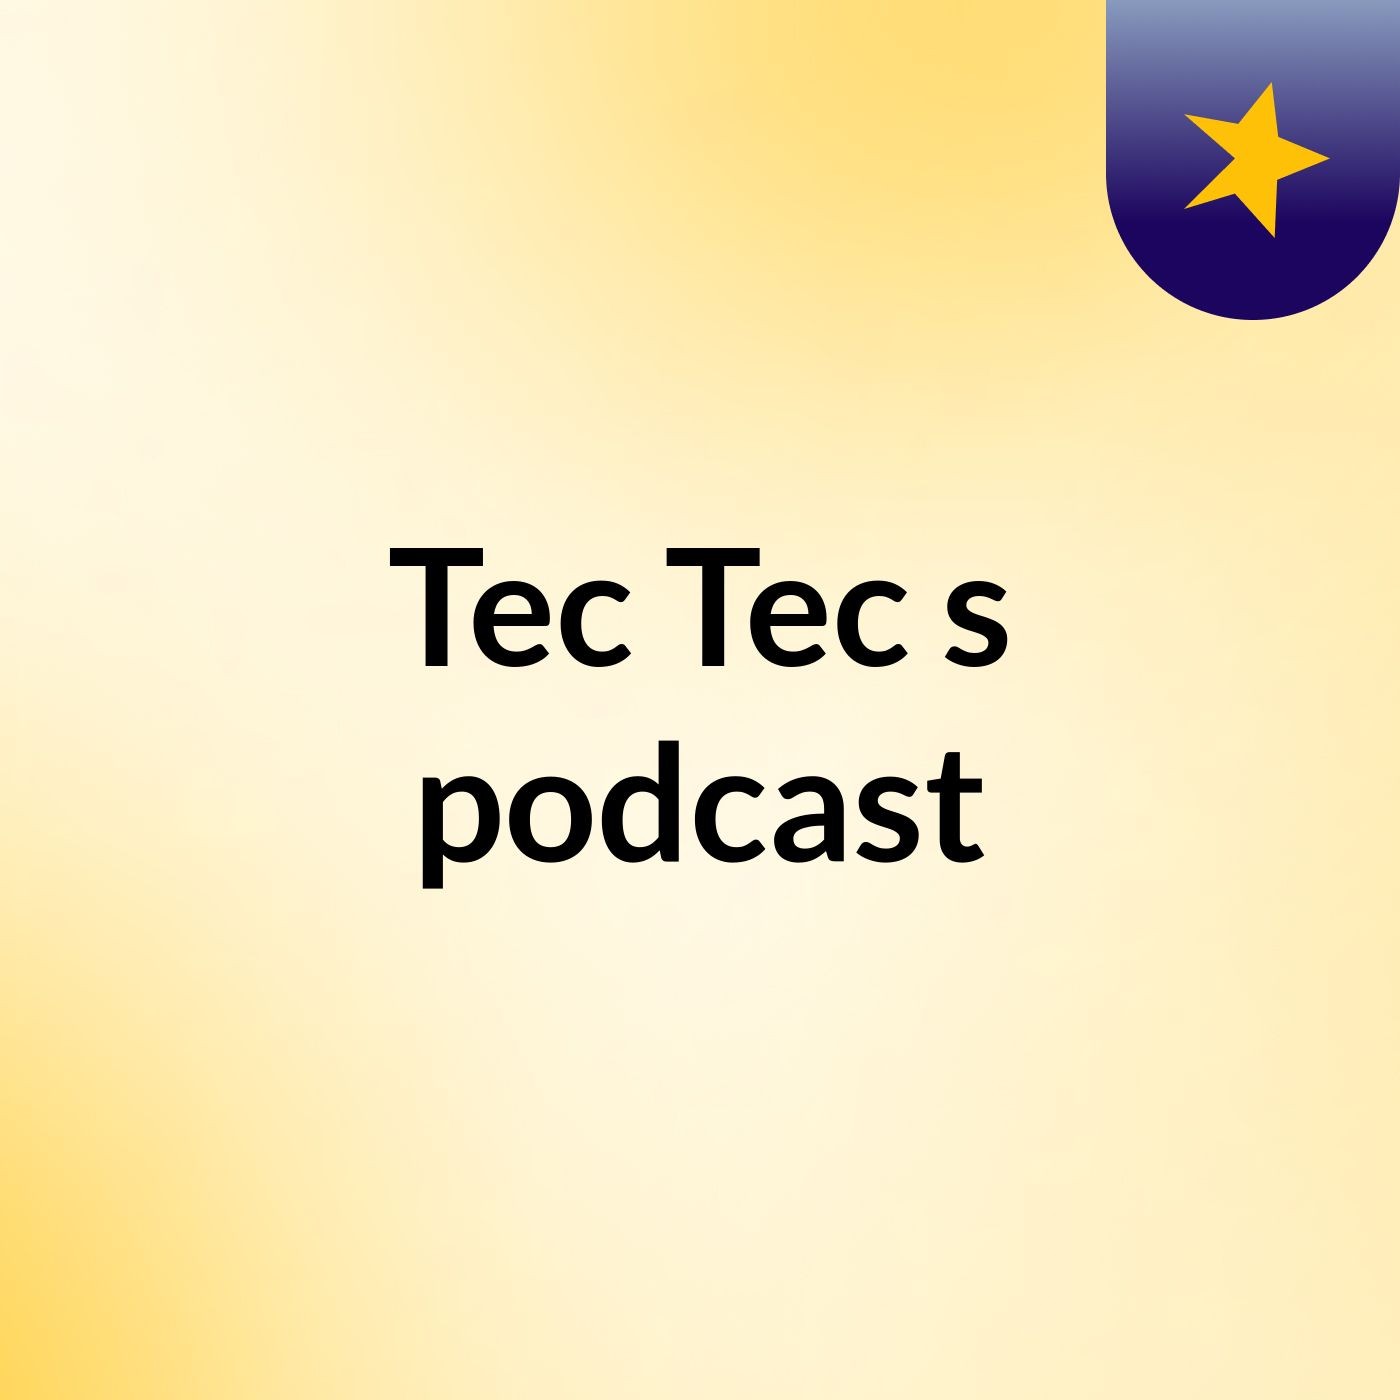 Tec Tec's podcast